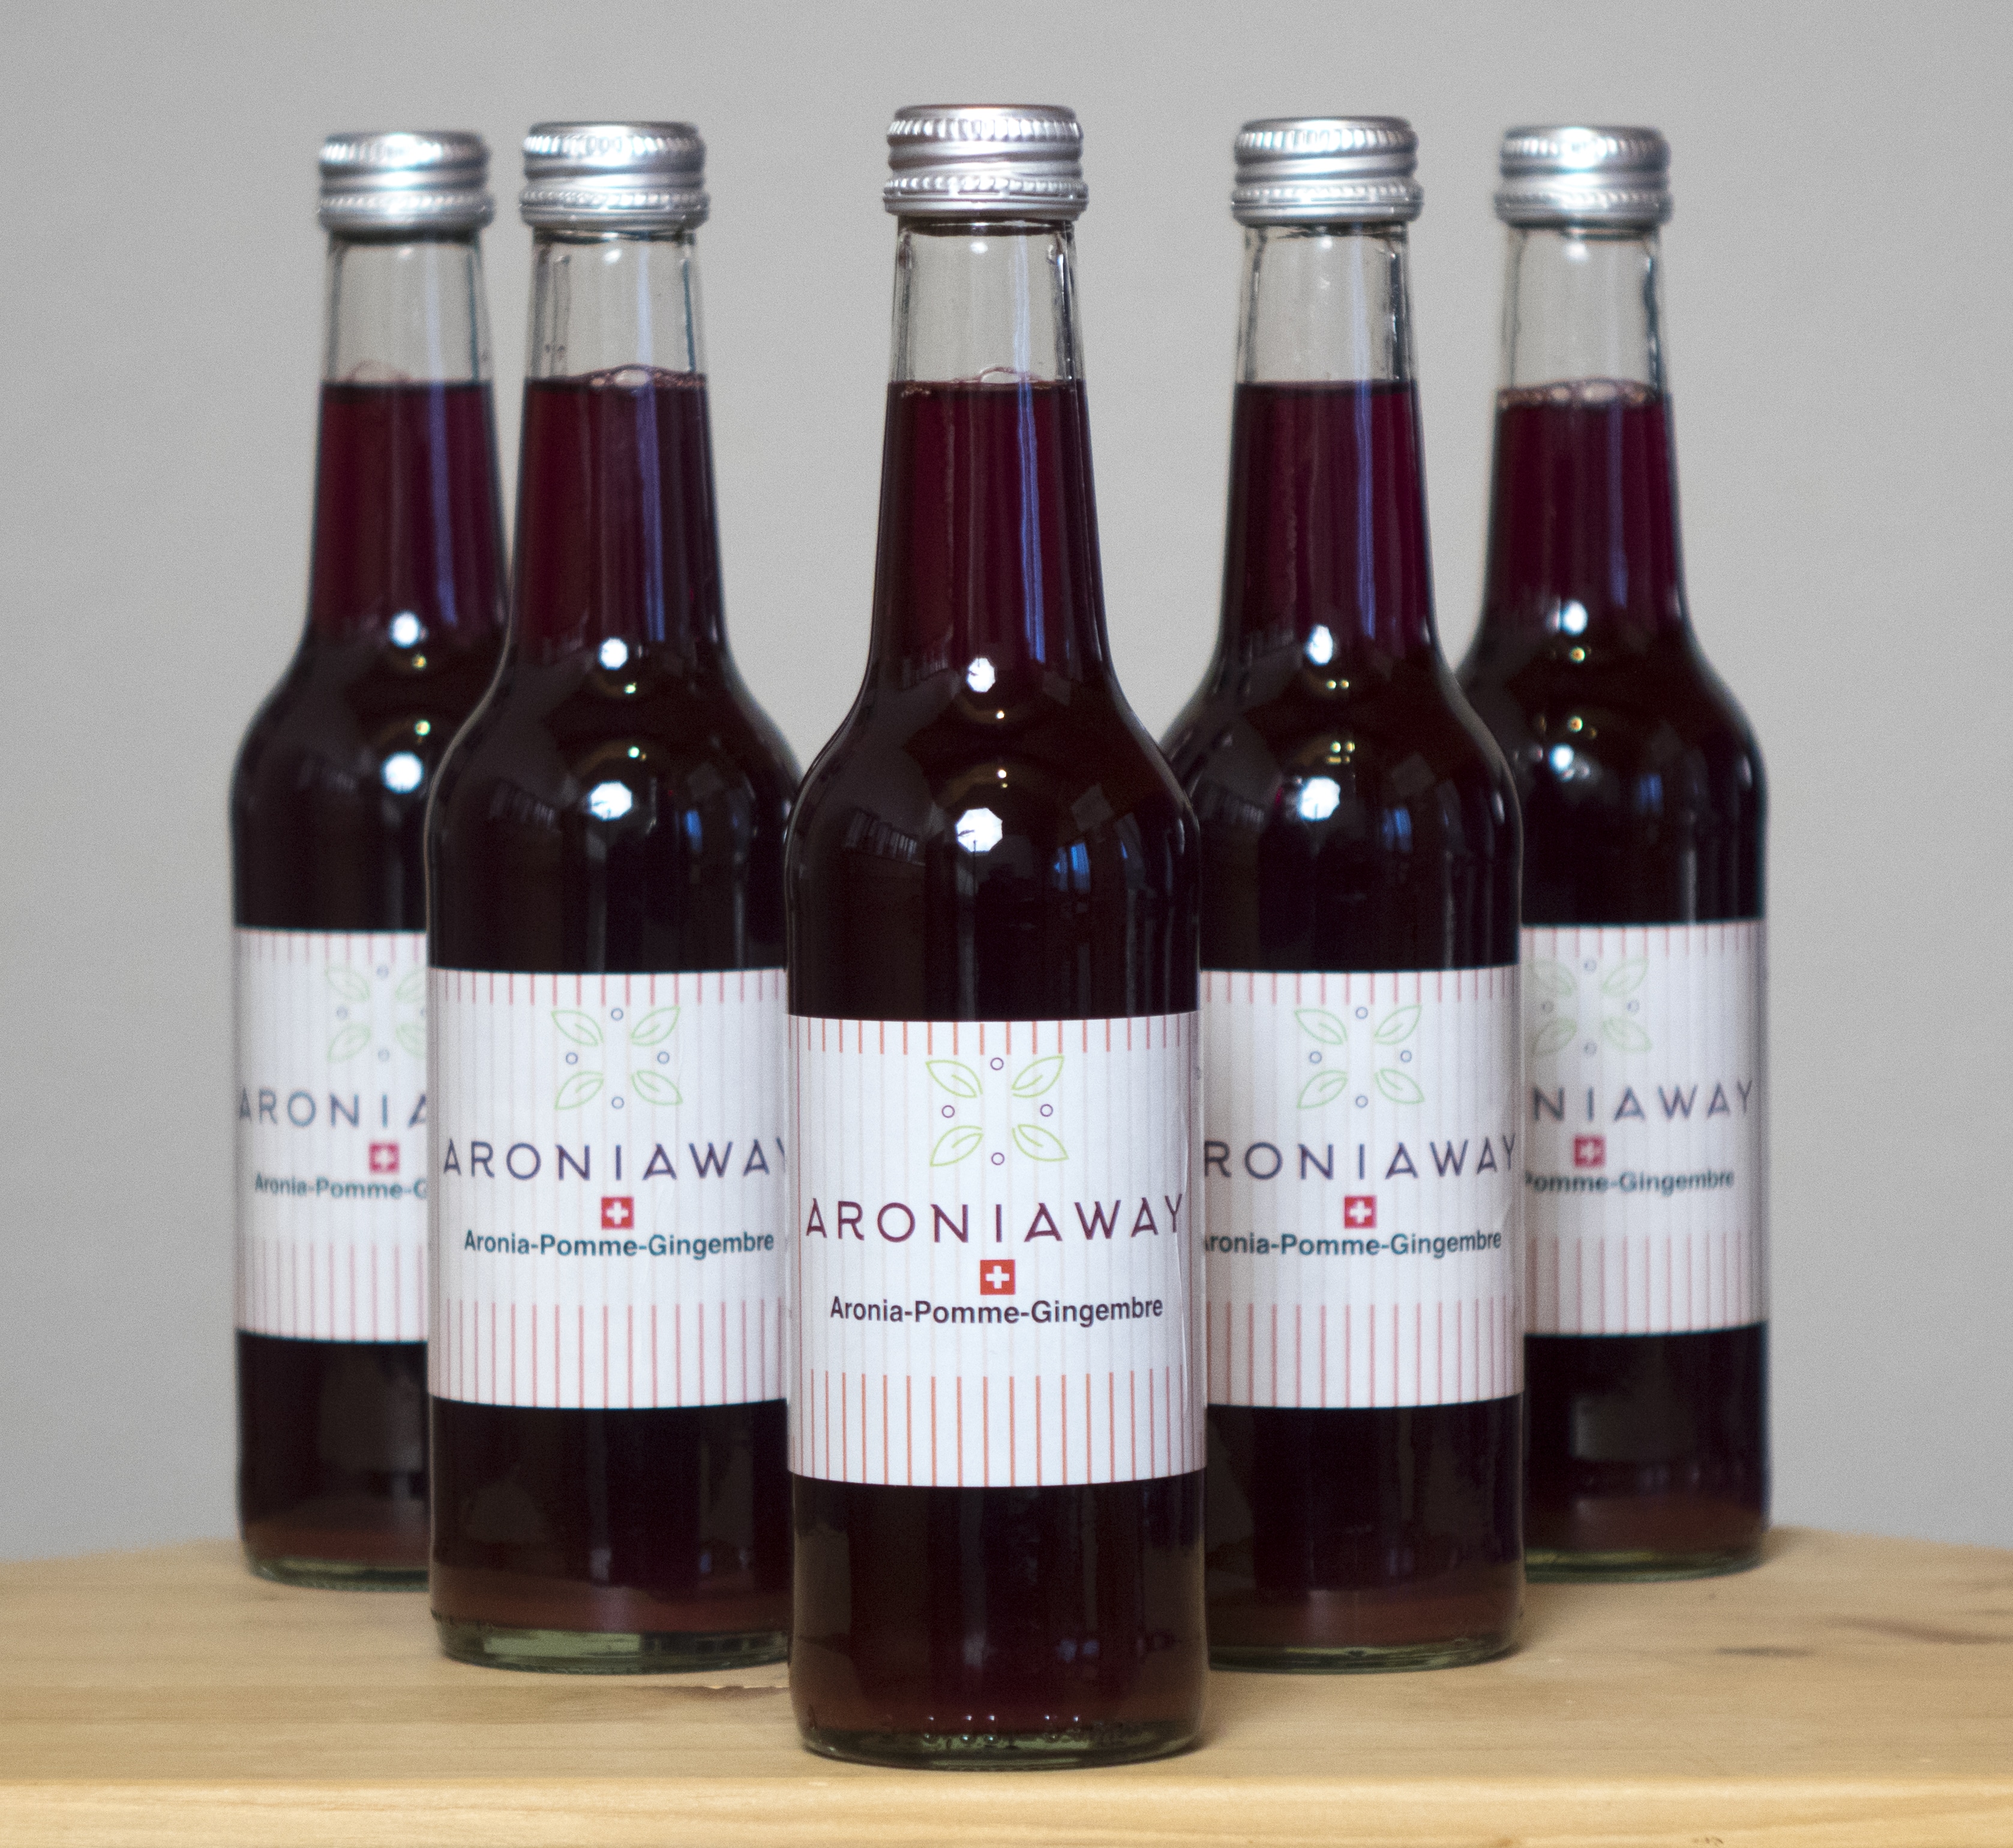 AroniaWay lance une nouvelle boisson santé plaisir